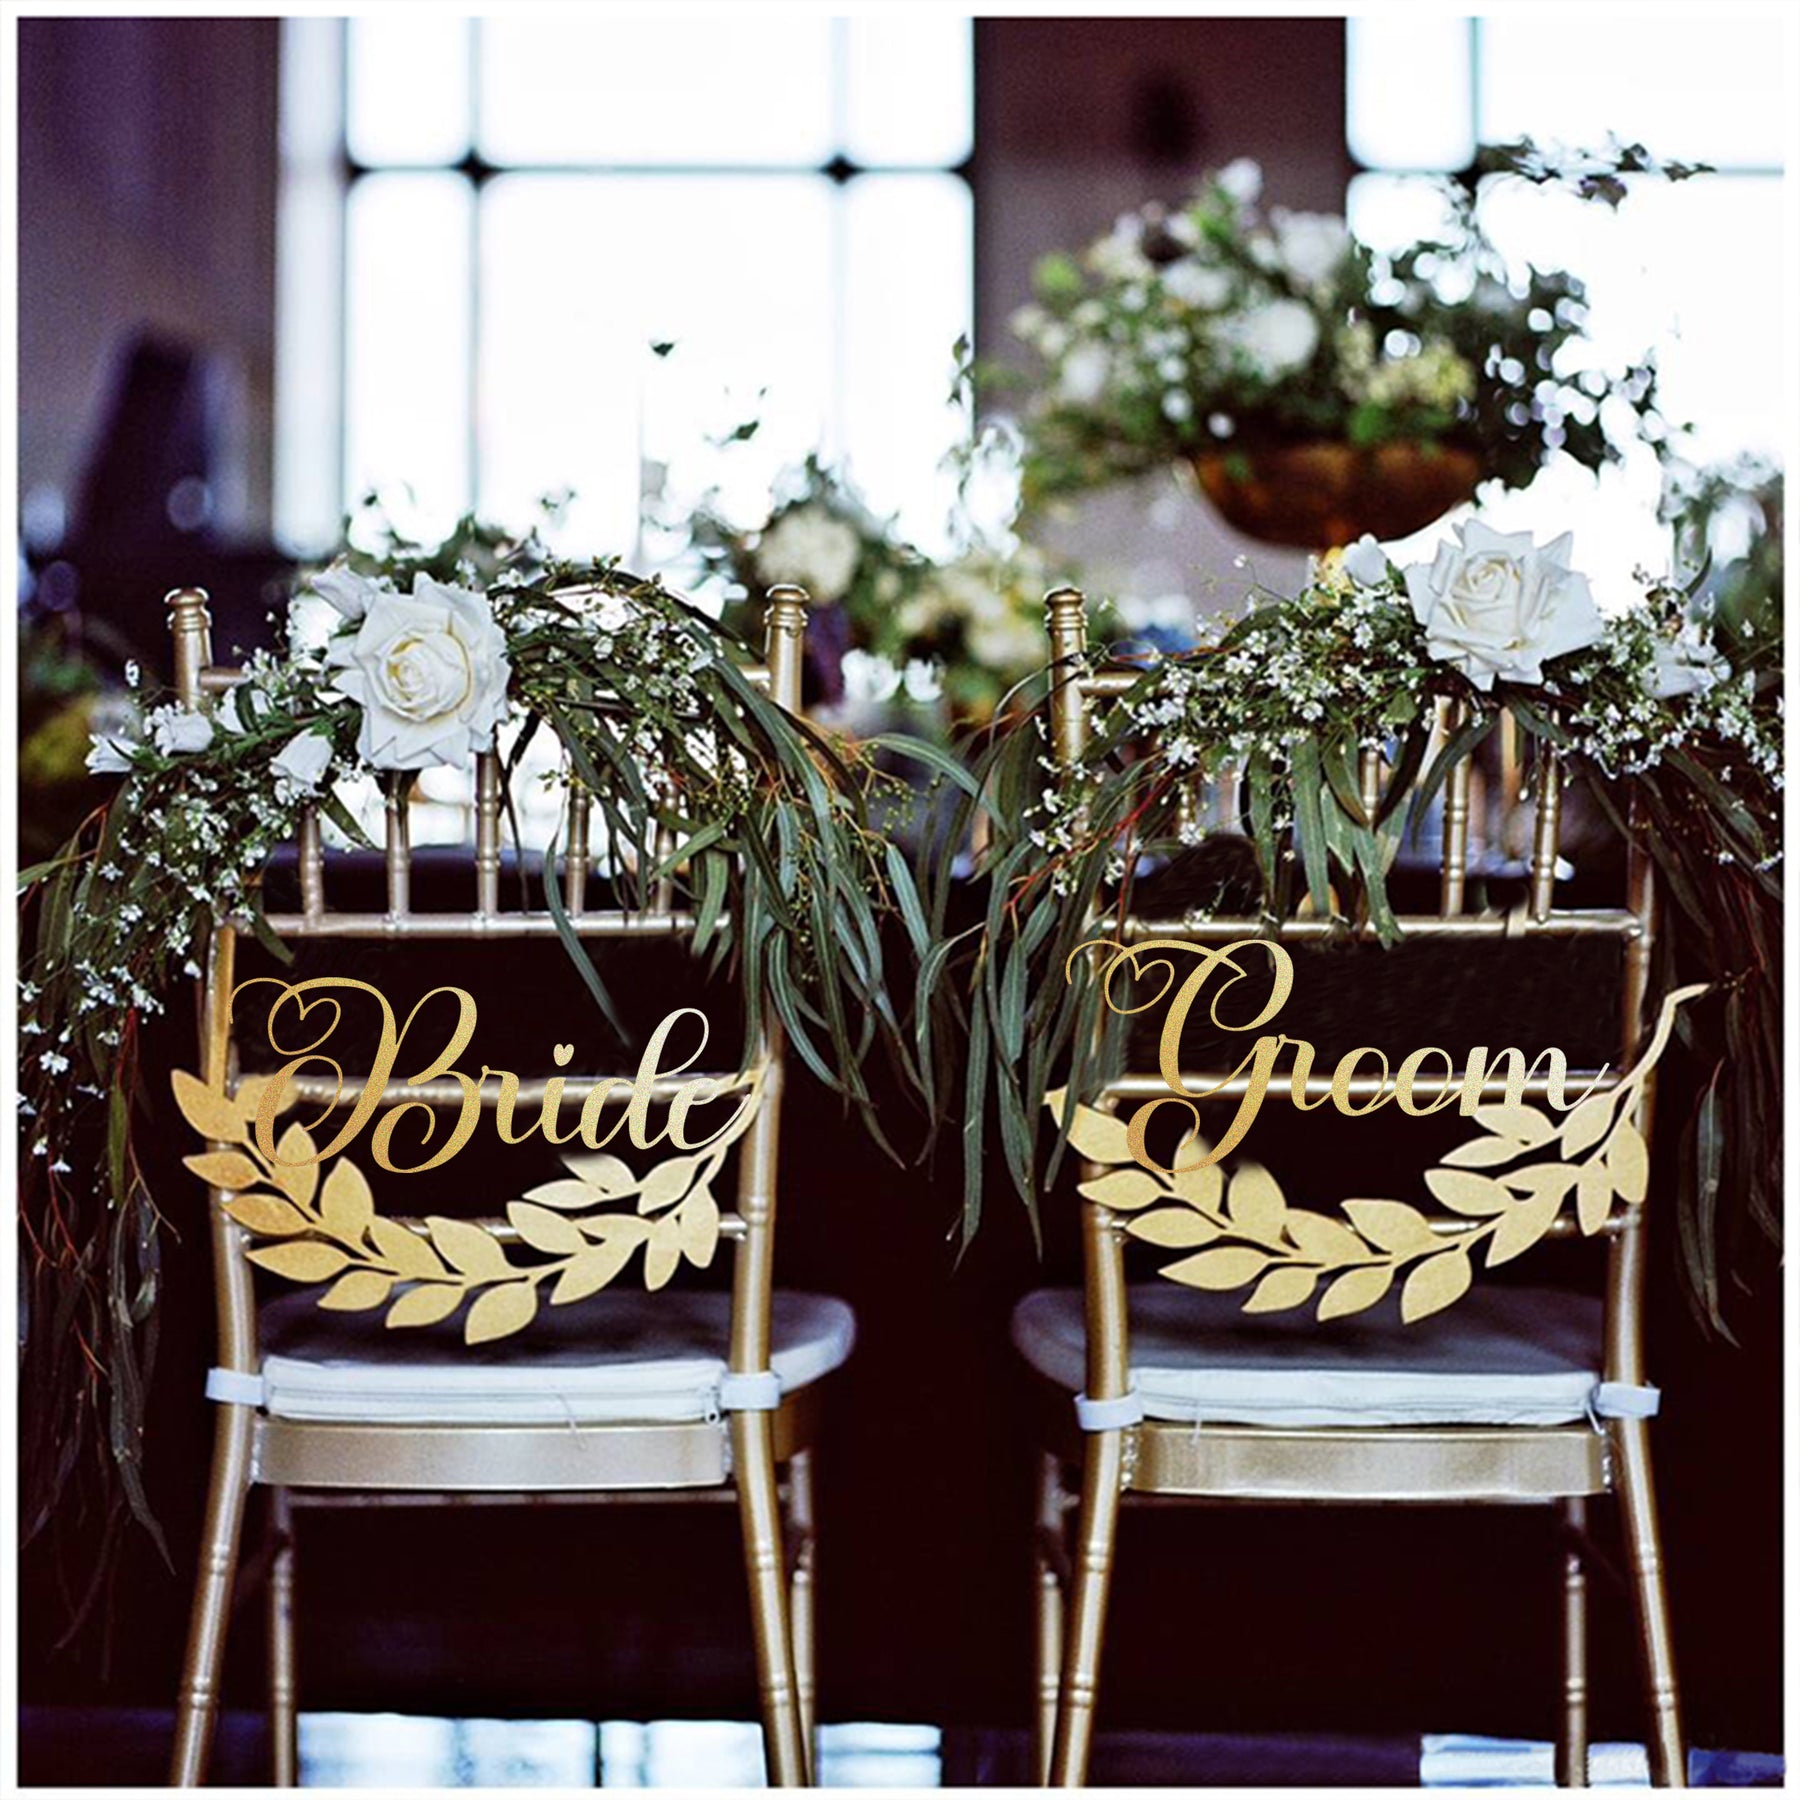 【婚禮系列】婚禮裝飾用品森系婚禮椅背 定制婚禮裝飾掛牌